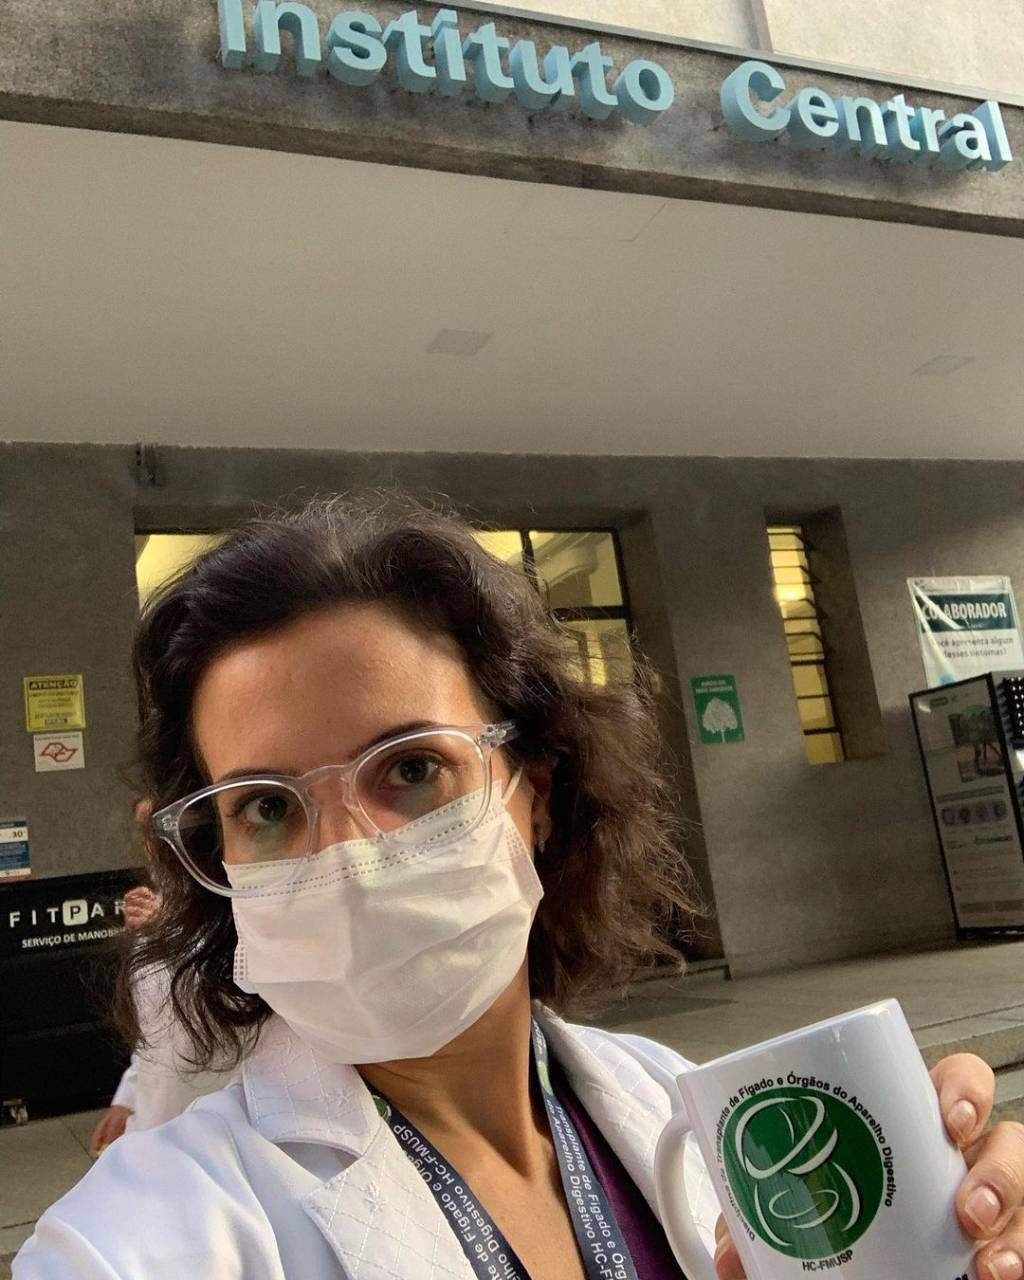 Imagem da médica usando máscara e segurando uma caneca com um logo do Hospital das Clínicas